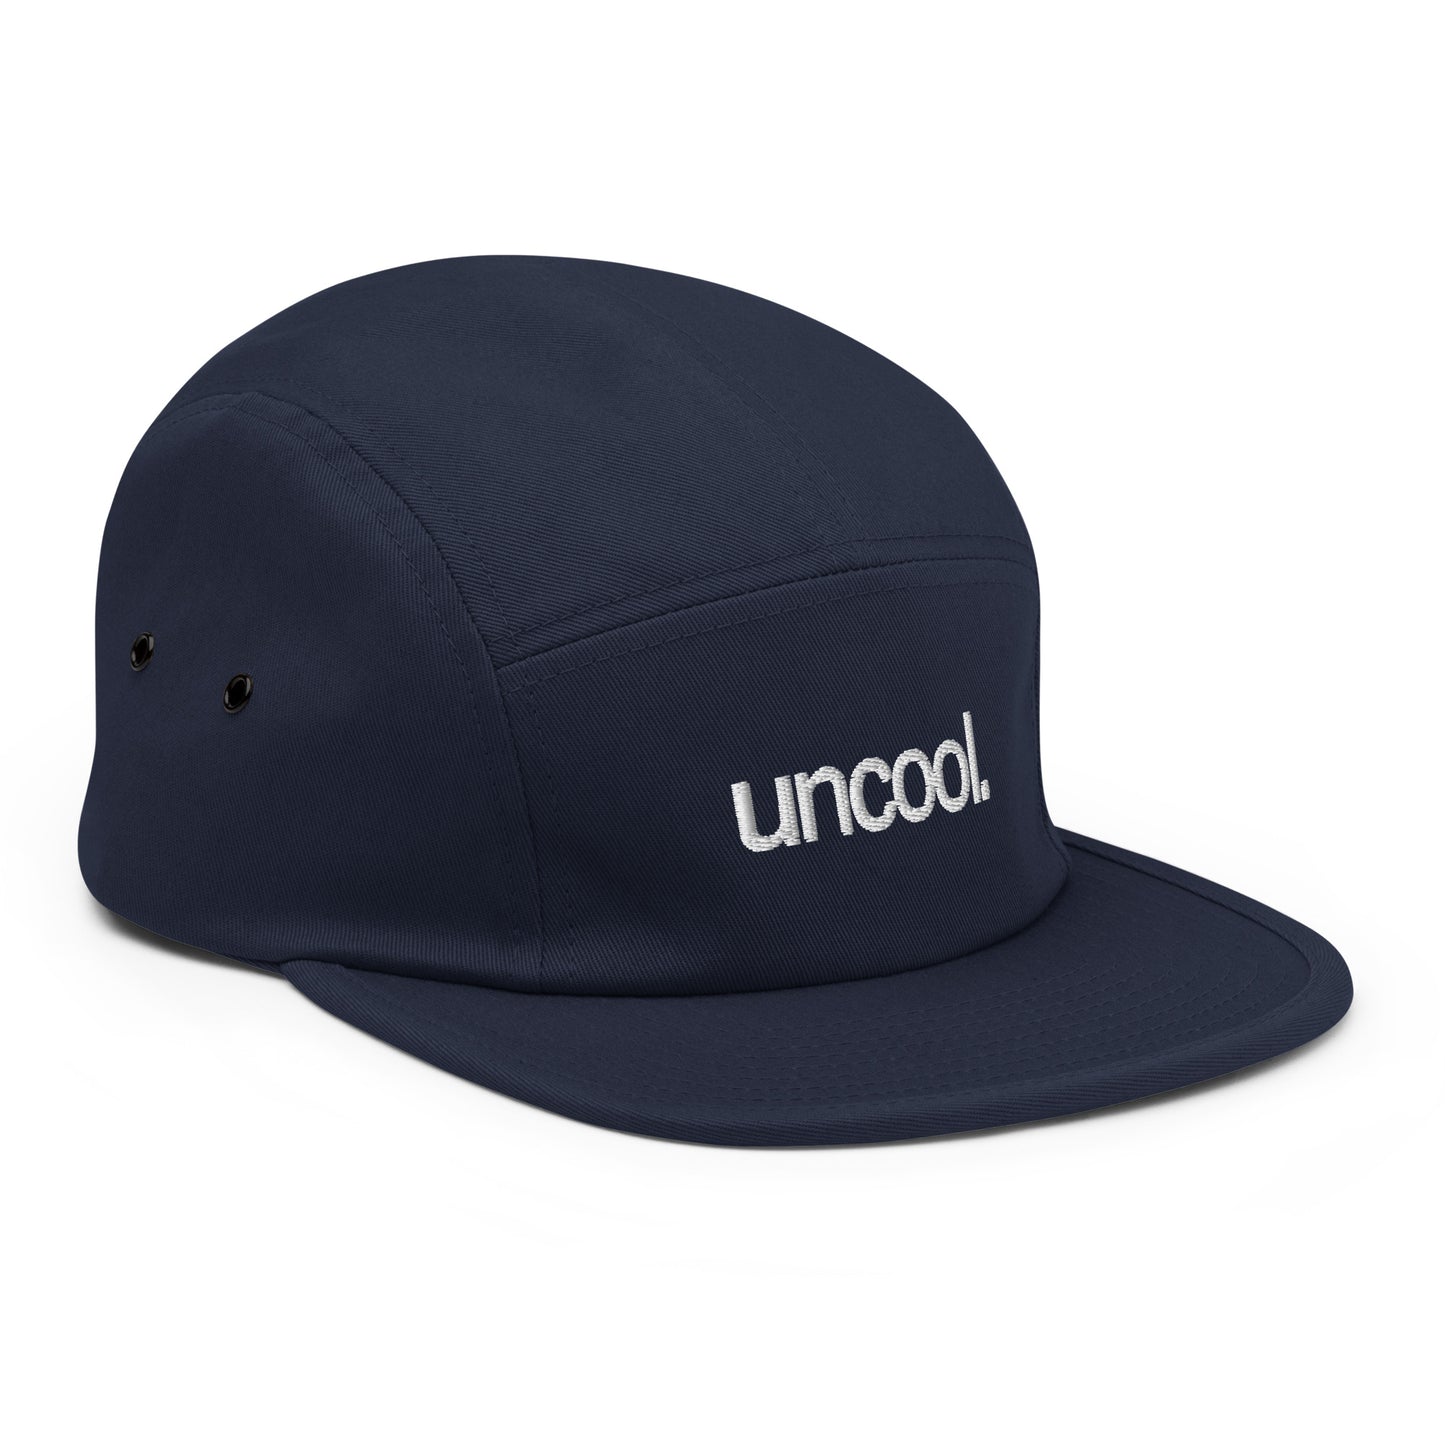 uncool. Five Panel Hat